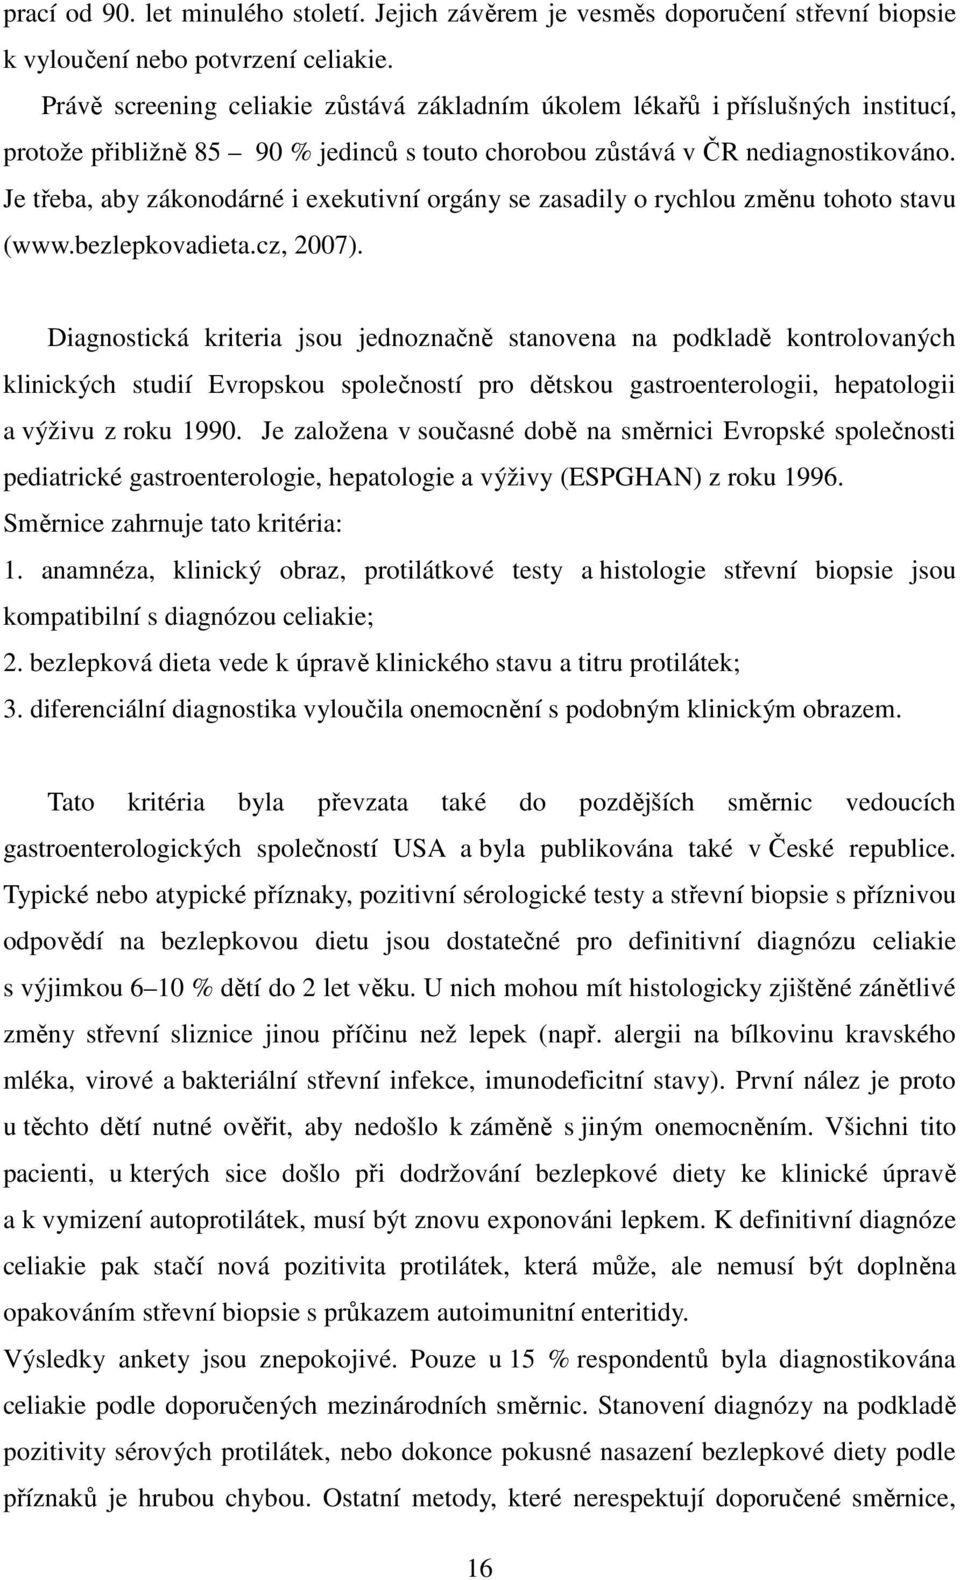 Je třeba, aby zákonodárné i exekutivní orgány se zasadily o rychlou změnu tohoto stavu (www.bezlepkovadieta.cz, 2007).